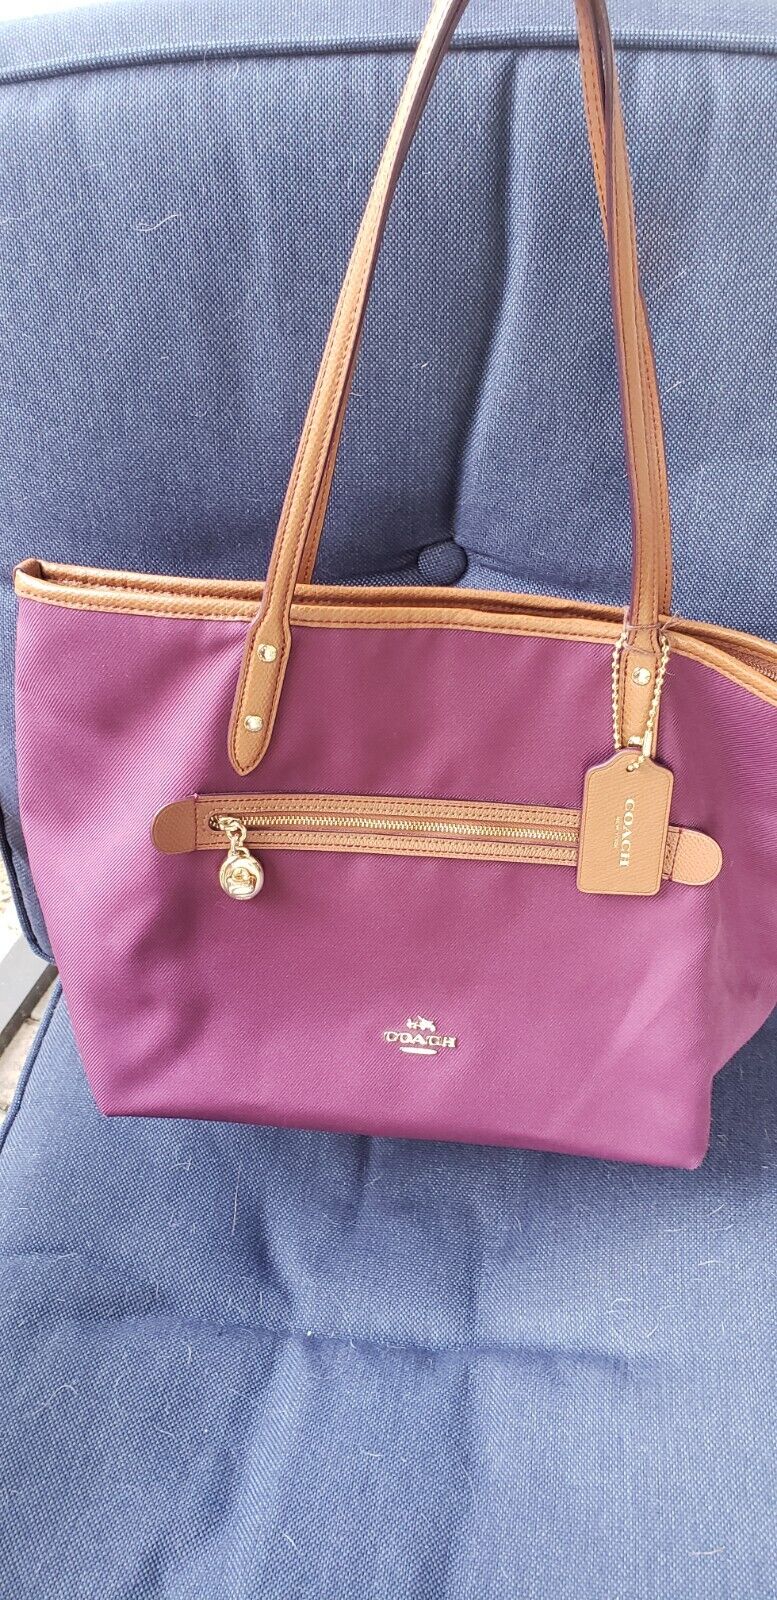 vintage leather coach bag purple - image 1